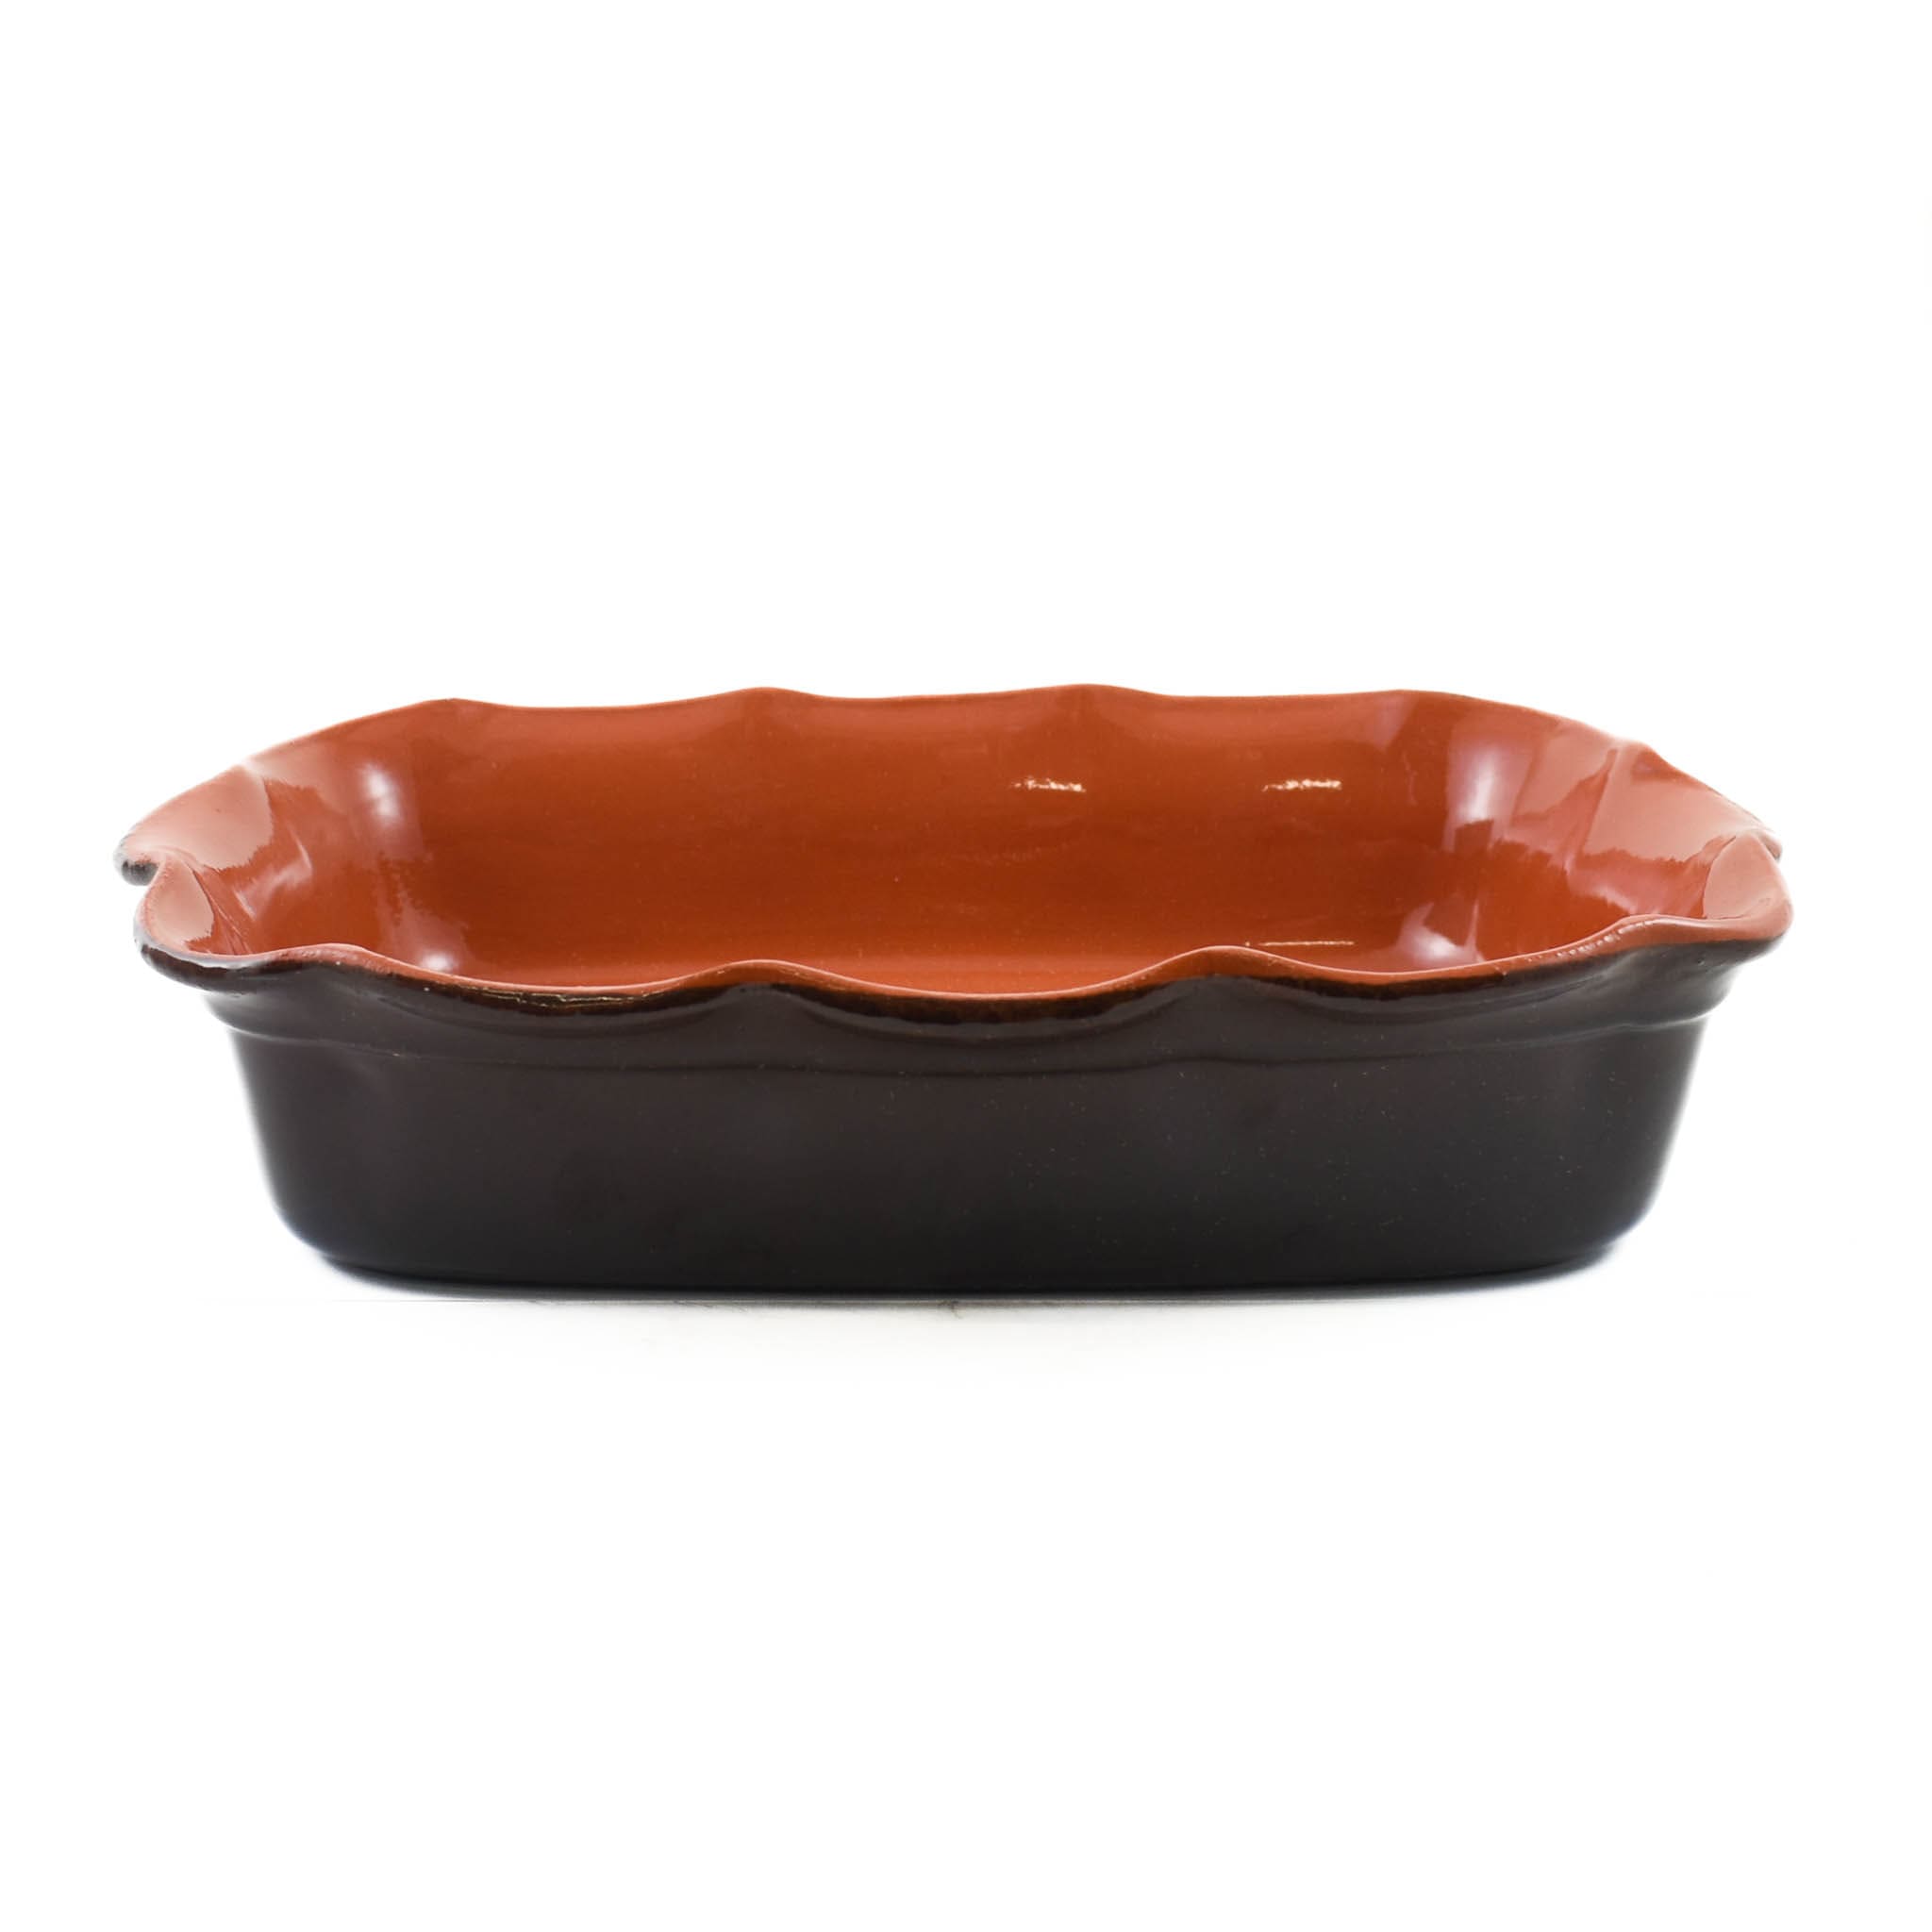 Glazed Terracotta Wavy Roasting Dish, 35cm